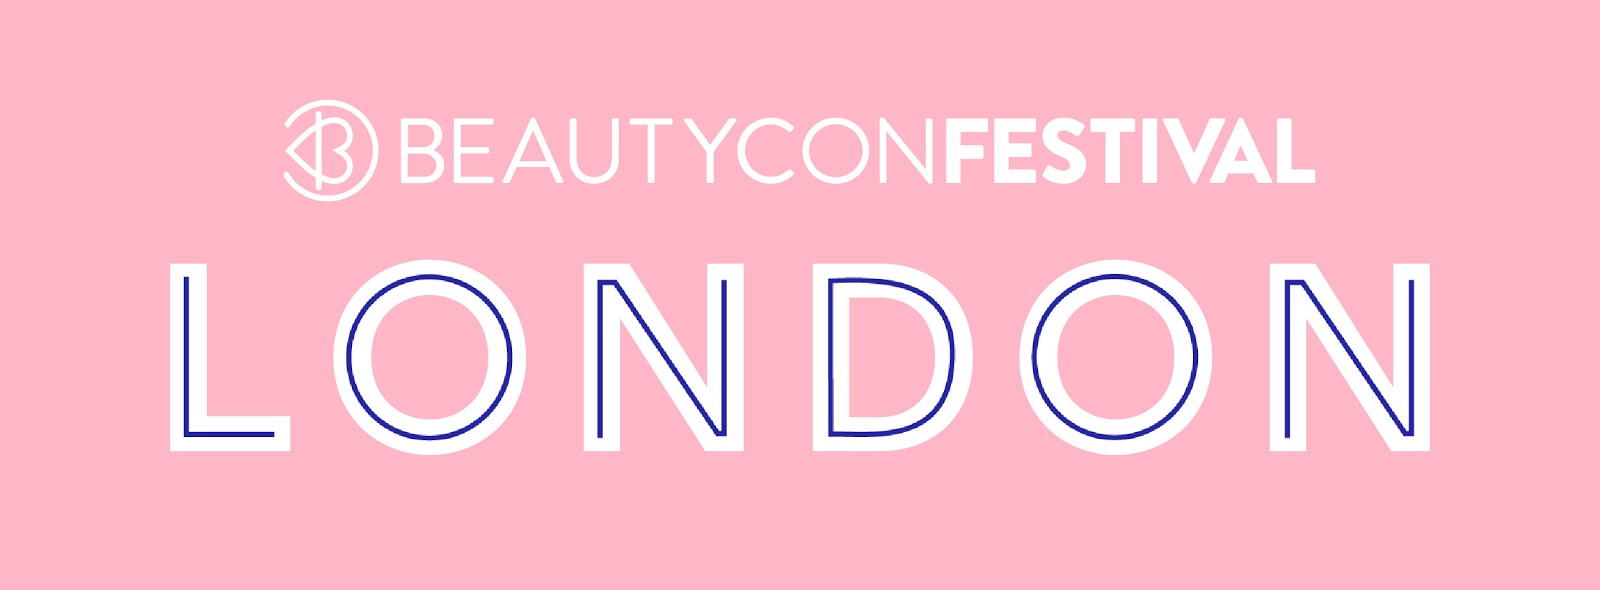 Beautycon London 2017 